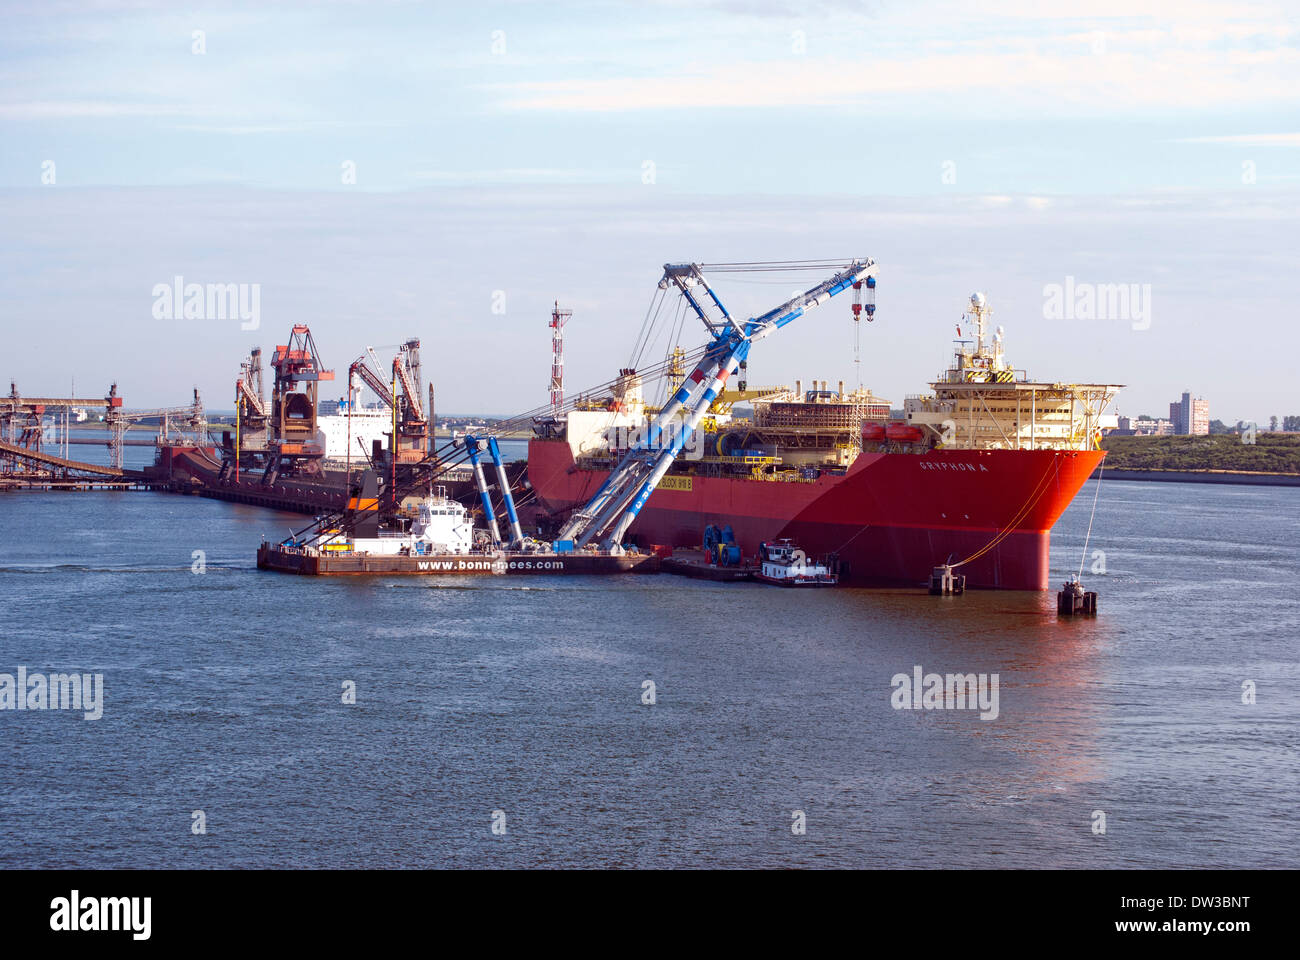 Gryphon un galleggiante serbatoio olio a Rotterdam dopo le riparazioni principali. Matador 3 assistendo con il sollevamento di carichi pesanti. Foto Stock